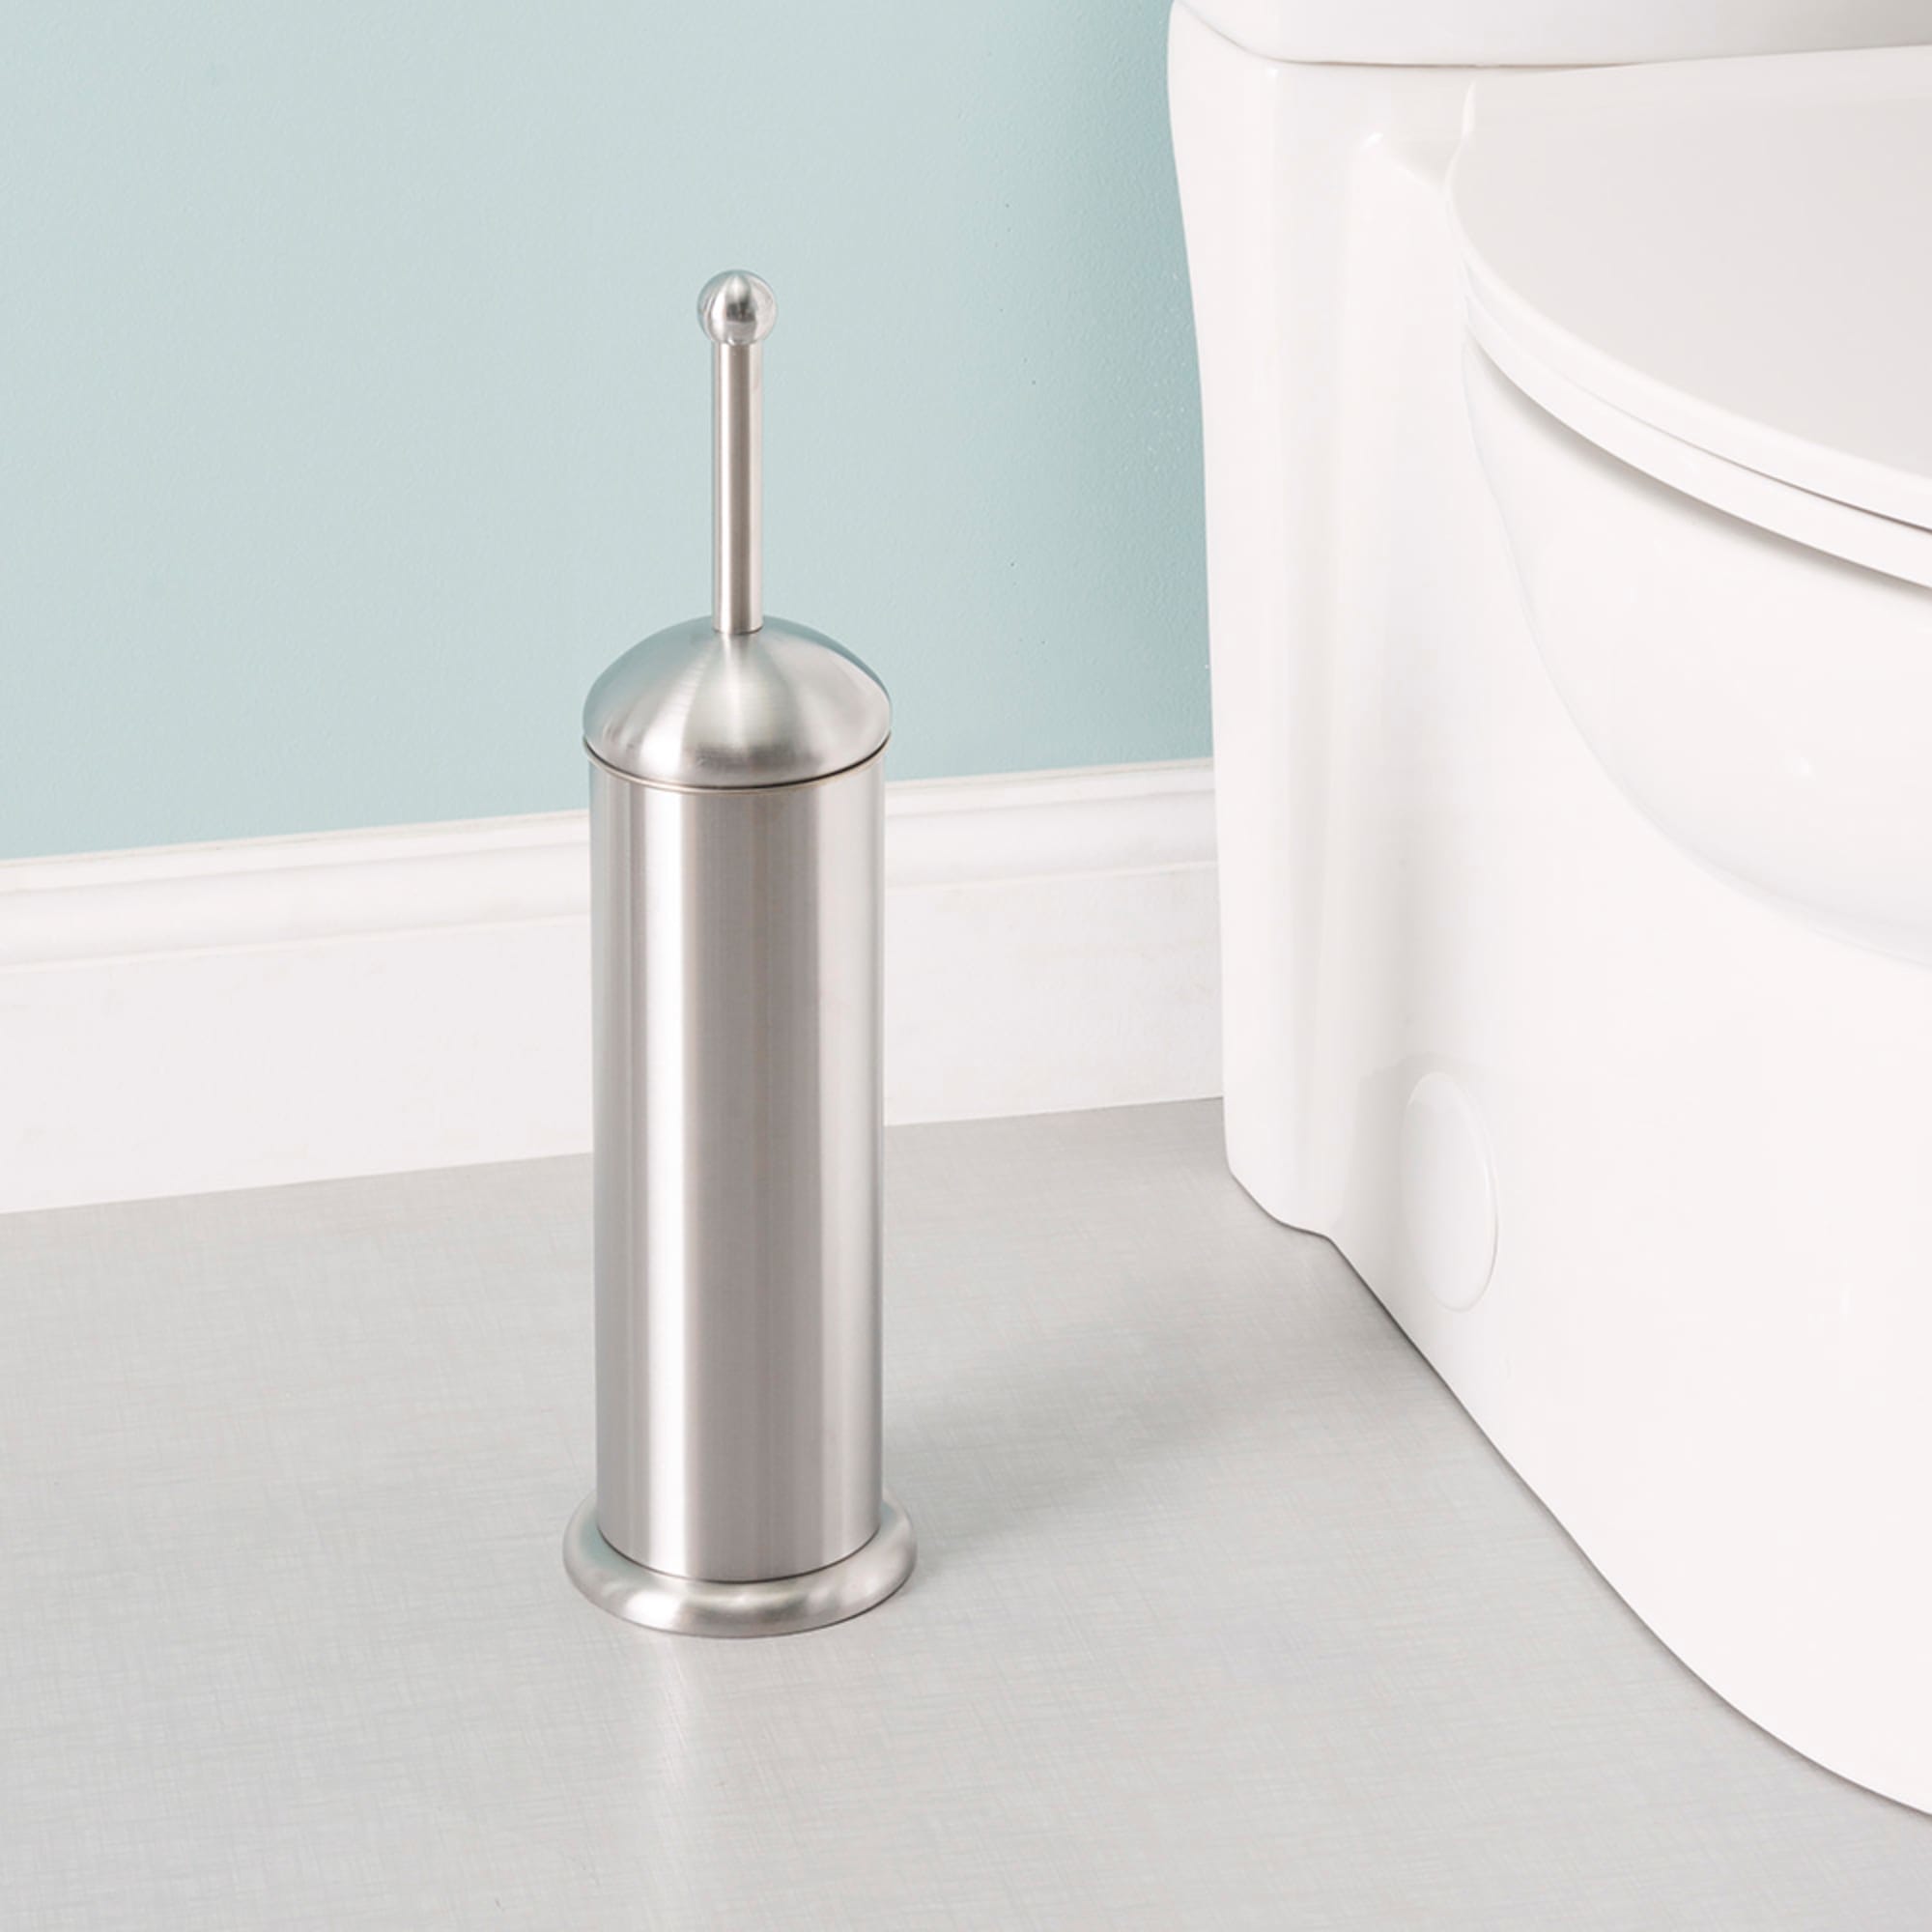 Home Basics Metal Toilet Brush $5.00 EACH, CASE PACK OF 12